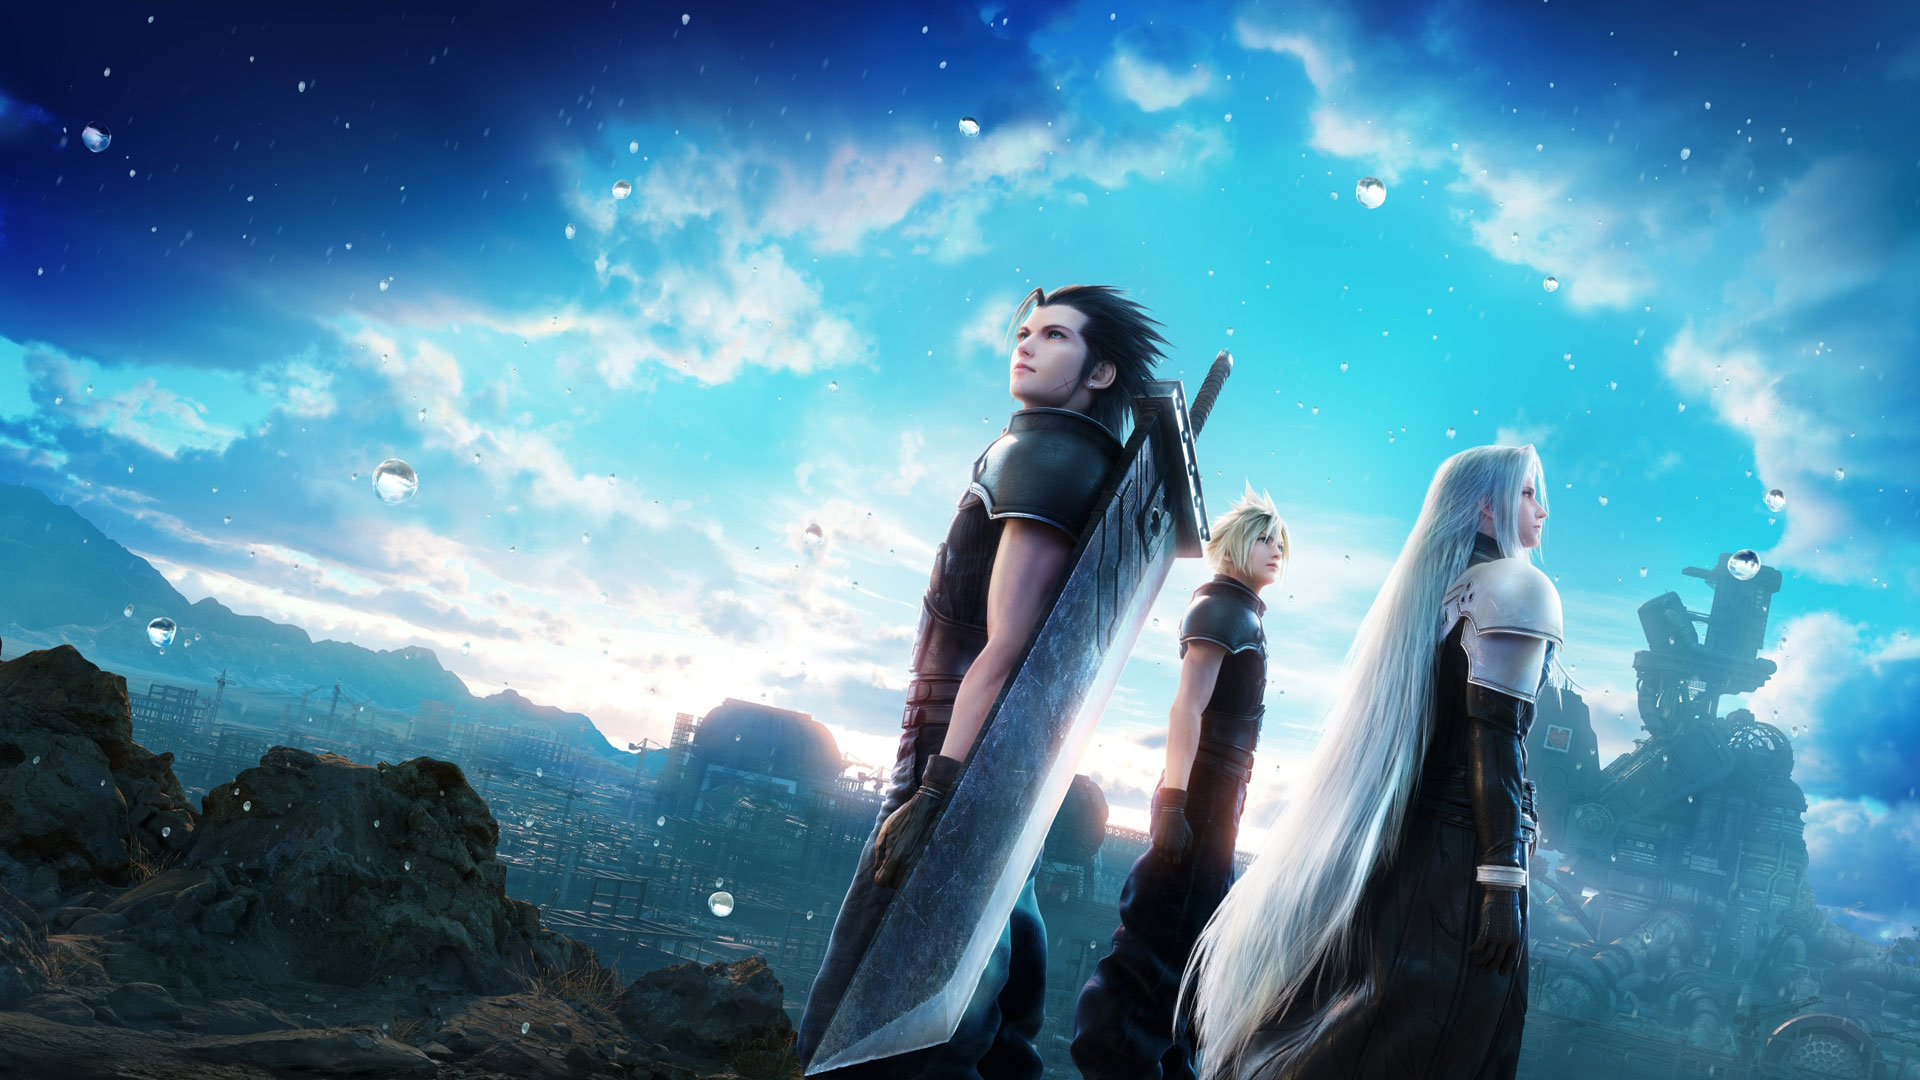 سهم بالای نسخه PS5 بازی Crisis Core Final Fantasy VII Reunion از فروش آن در بریتانیا